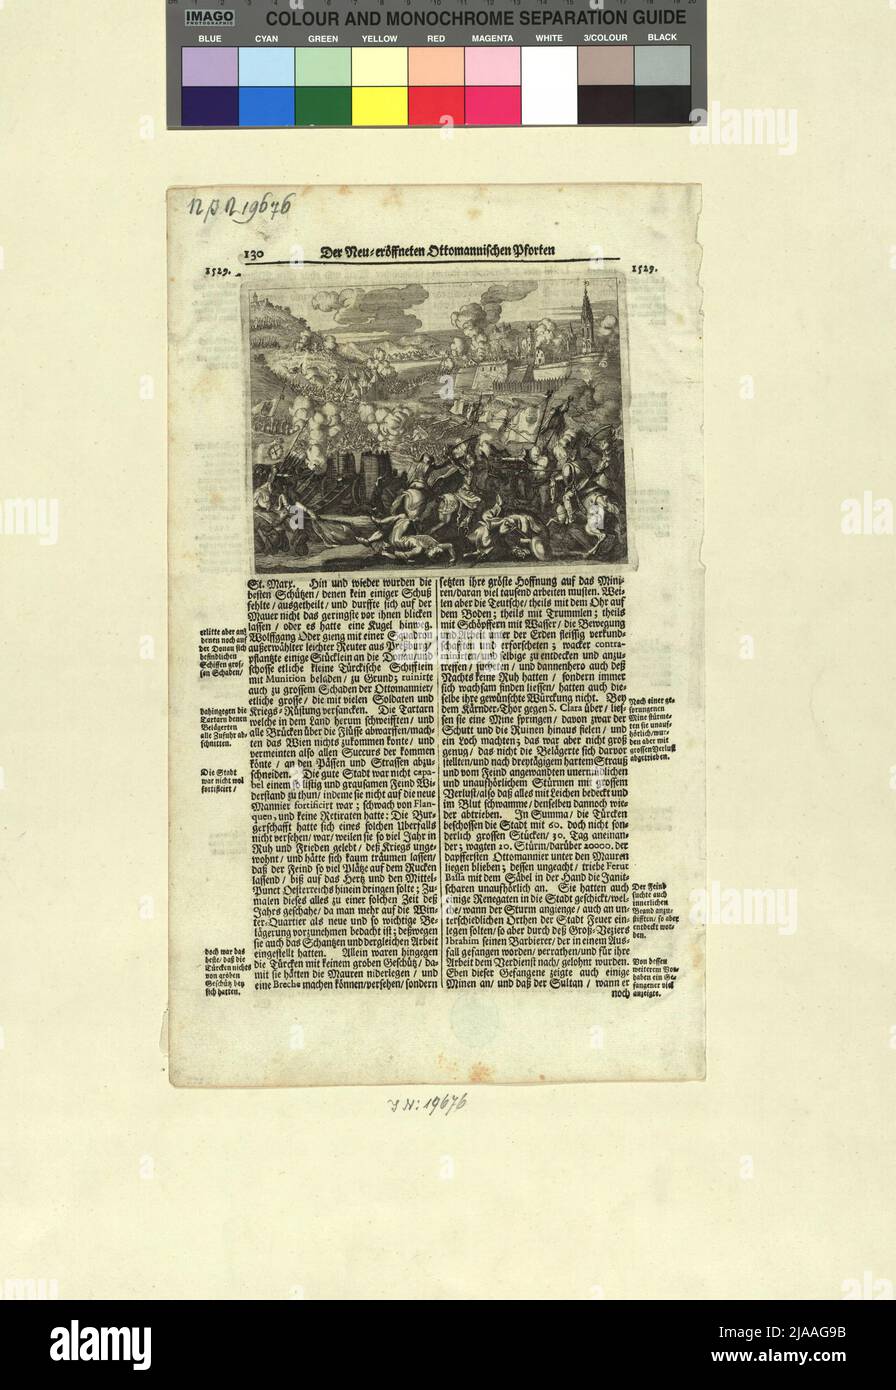 Pagina 130 dal libro 'il Neu = porta ottomannica aperta' con la vista dell'assedio di Vienna 1529. Paul Rycaut (Ricaut) (1629-1700), Auteur Foto Stock